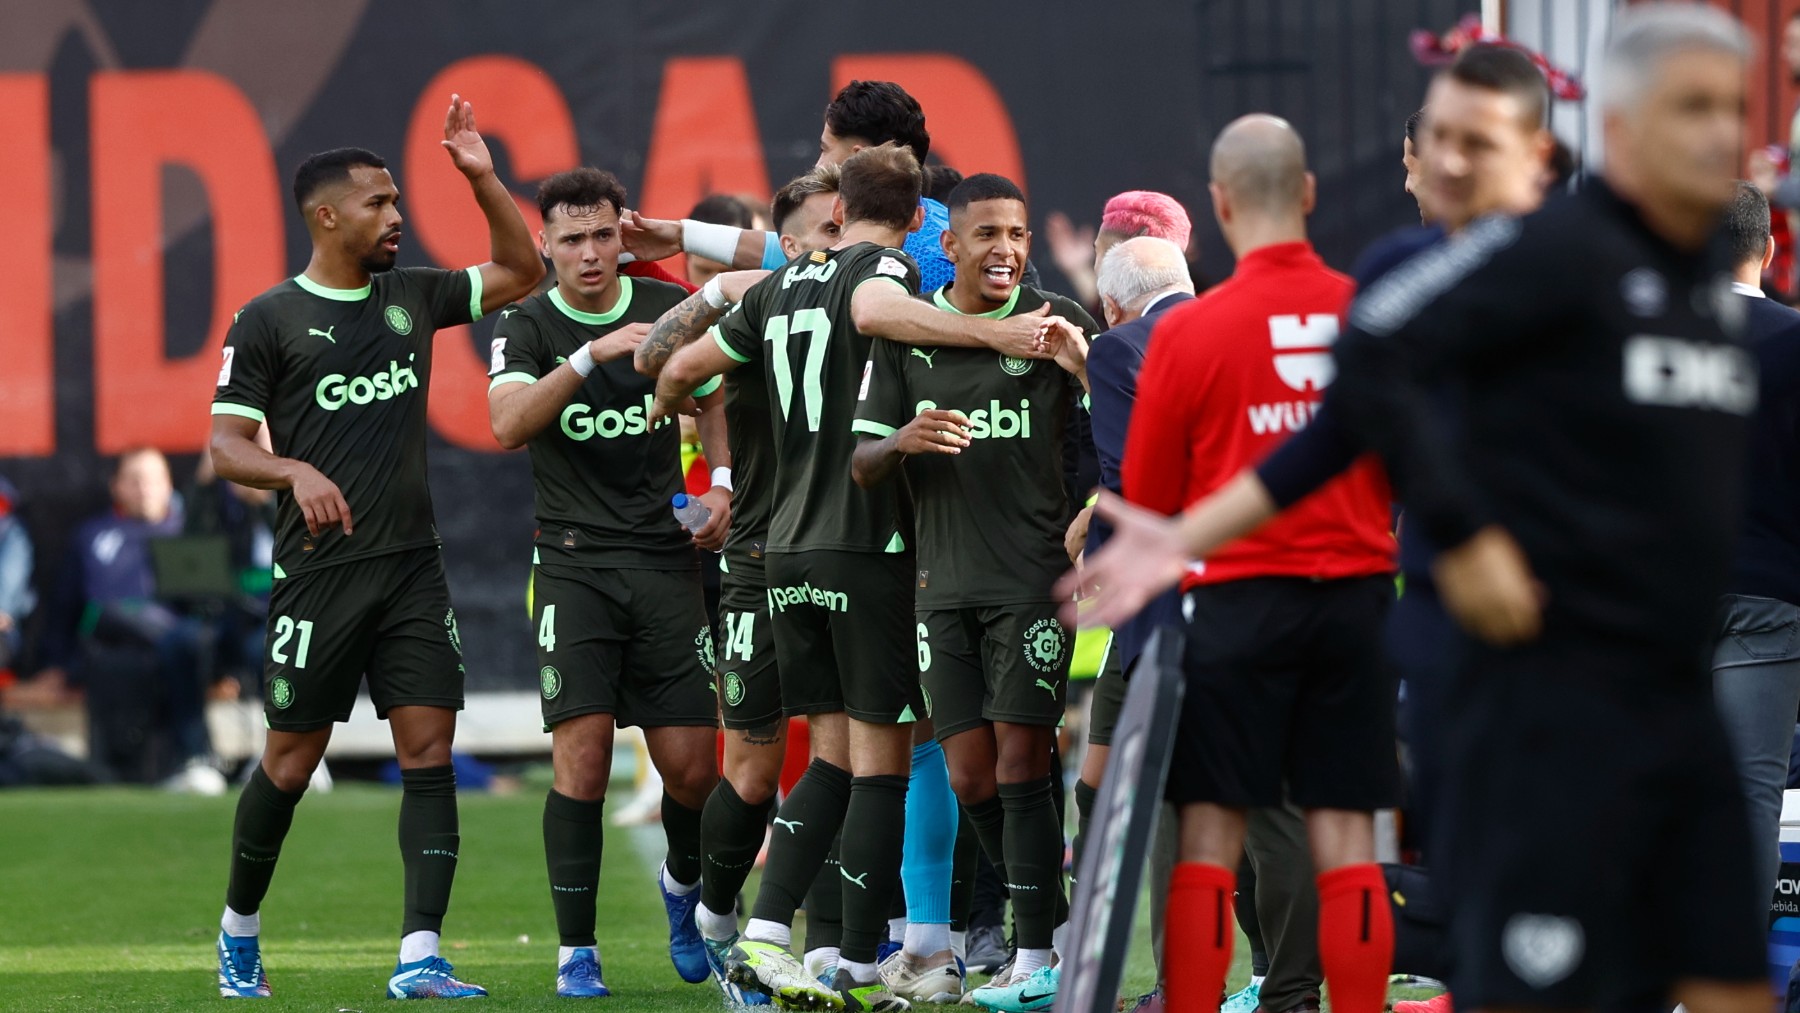 Los jugadores del Girona celebran un gol. (Getty)